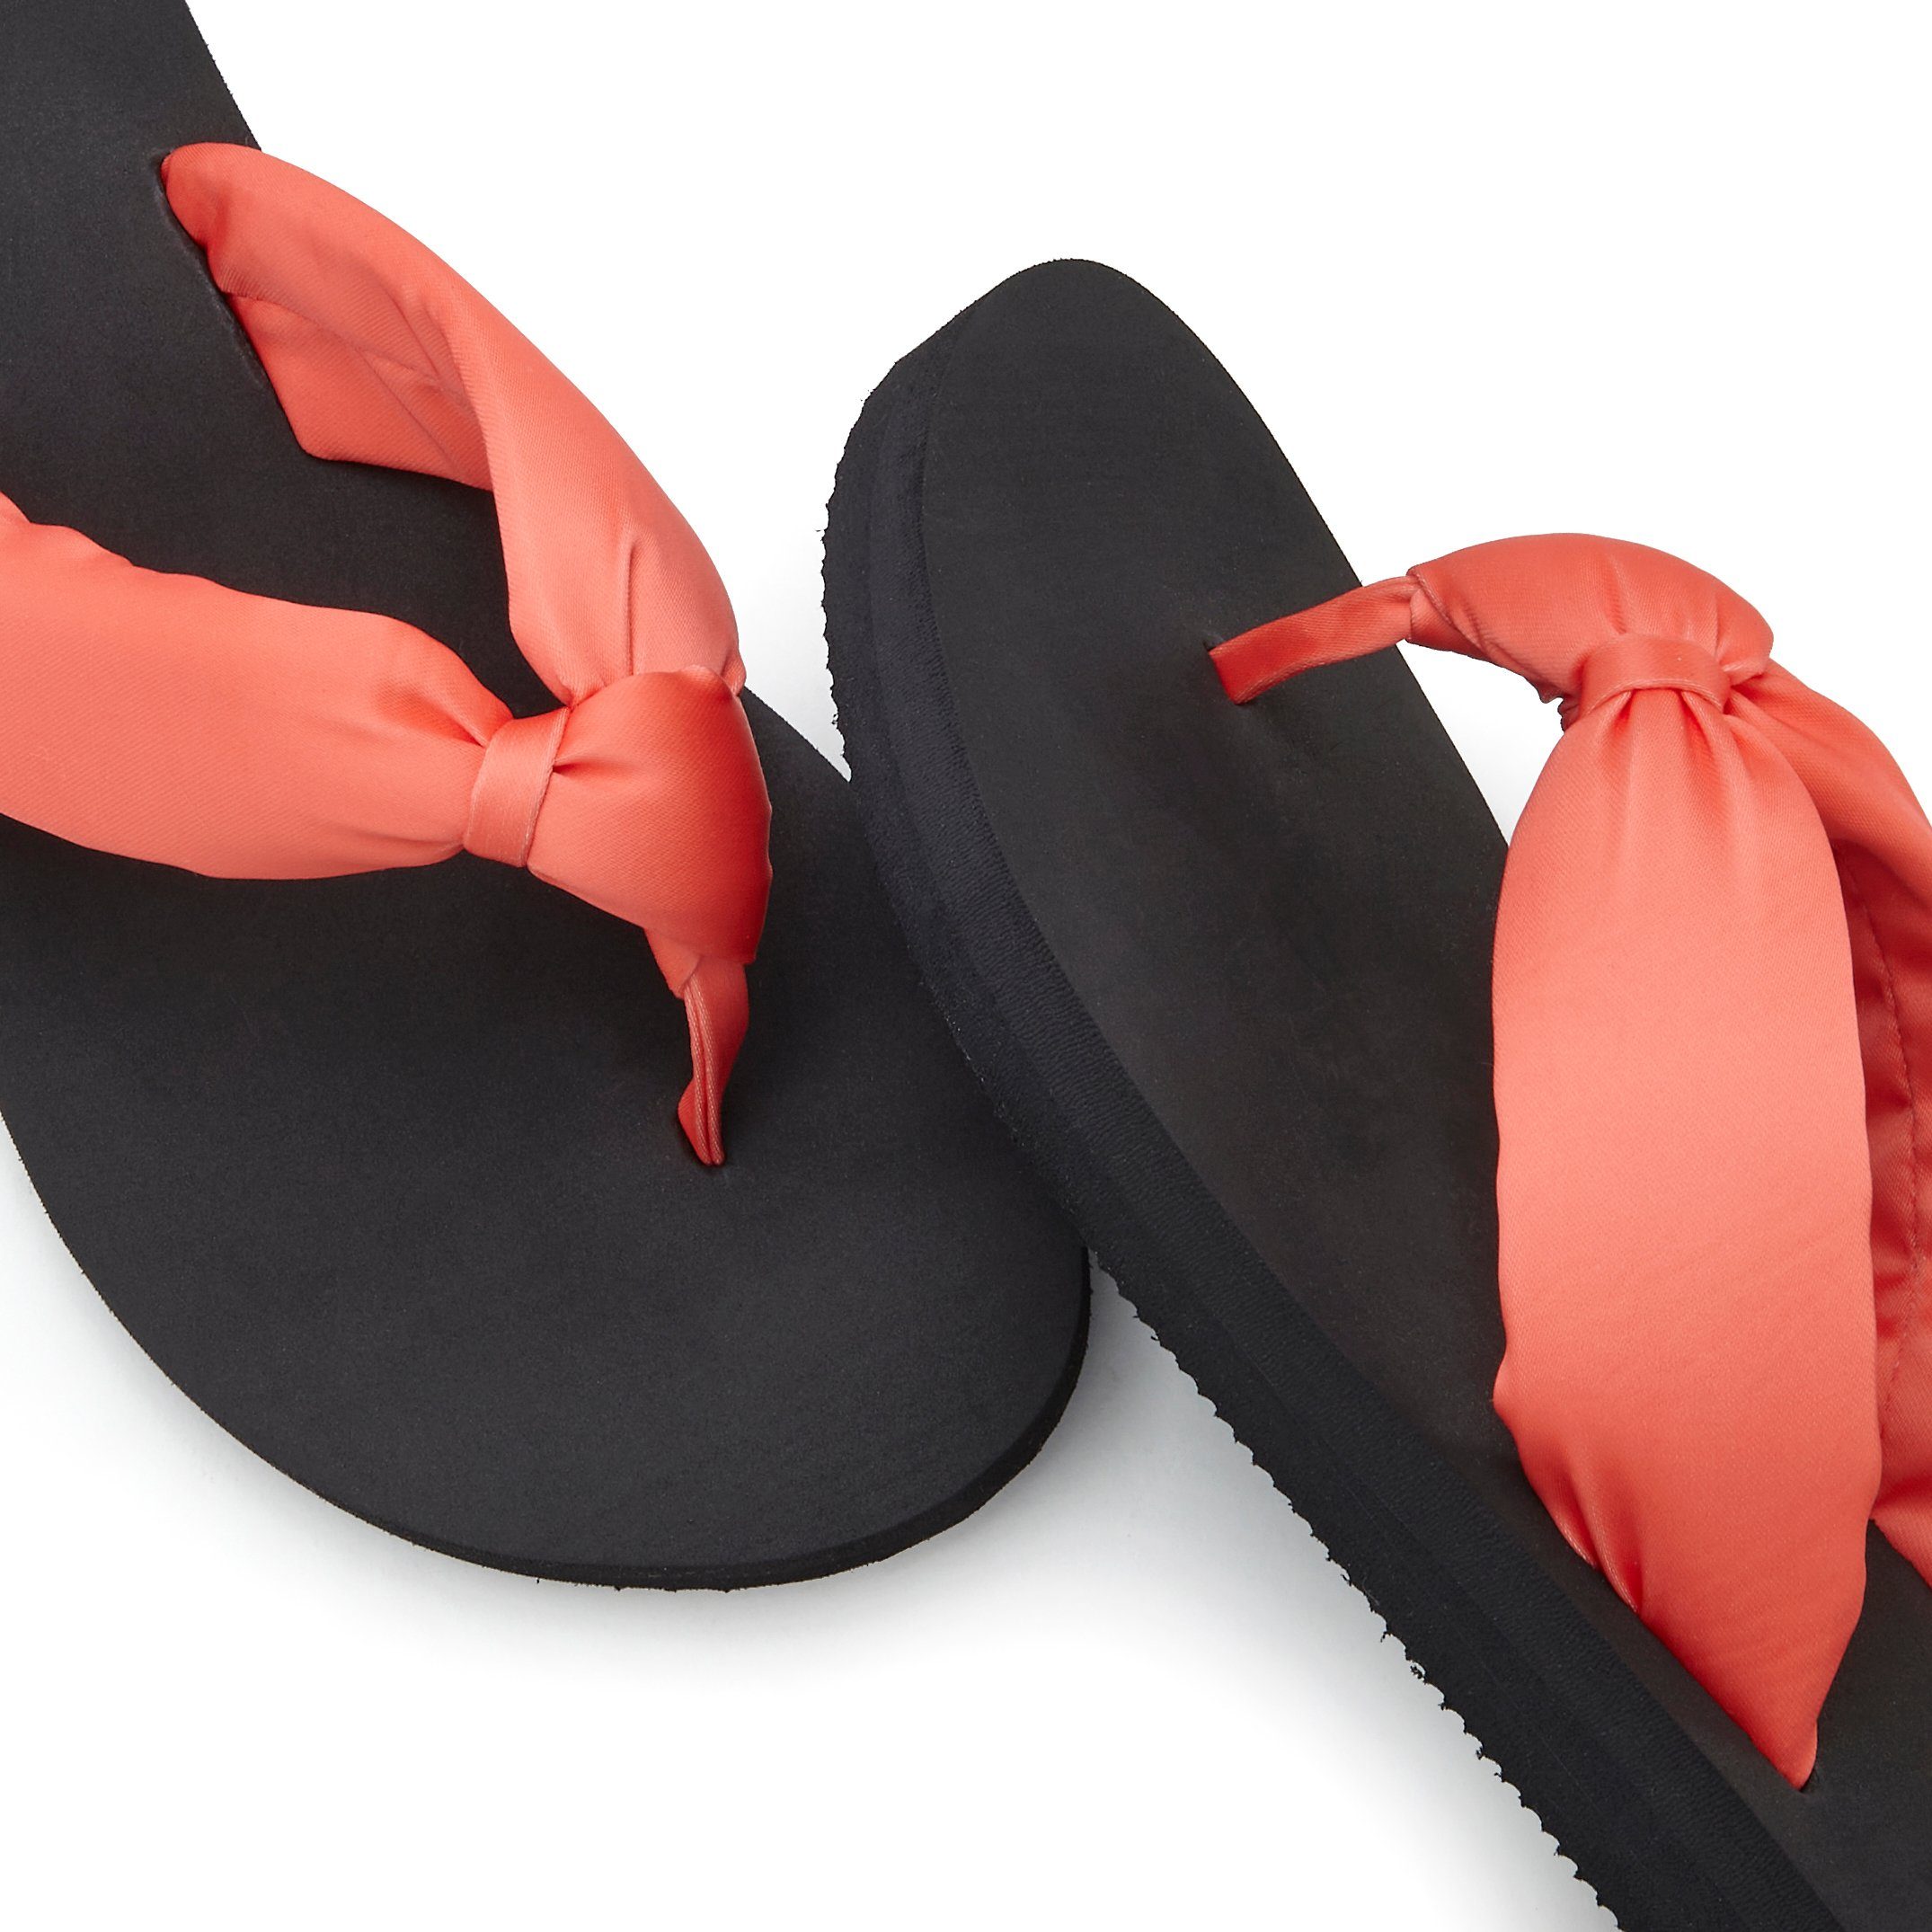 LASCANA Badezehentrenner mit VEGAN orange-schwarz softem Badeschuh Sandale, Band Pantolette, ultraleicht